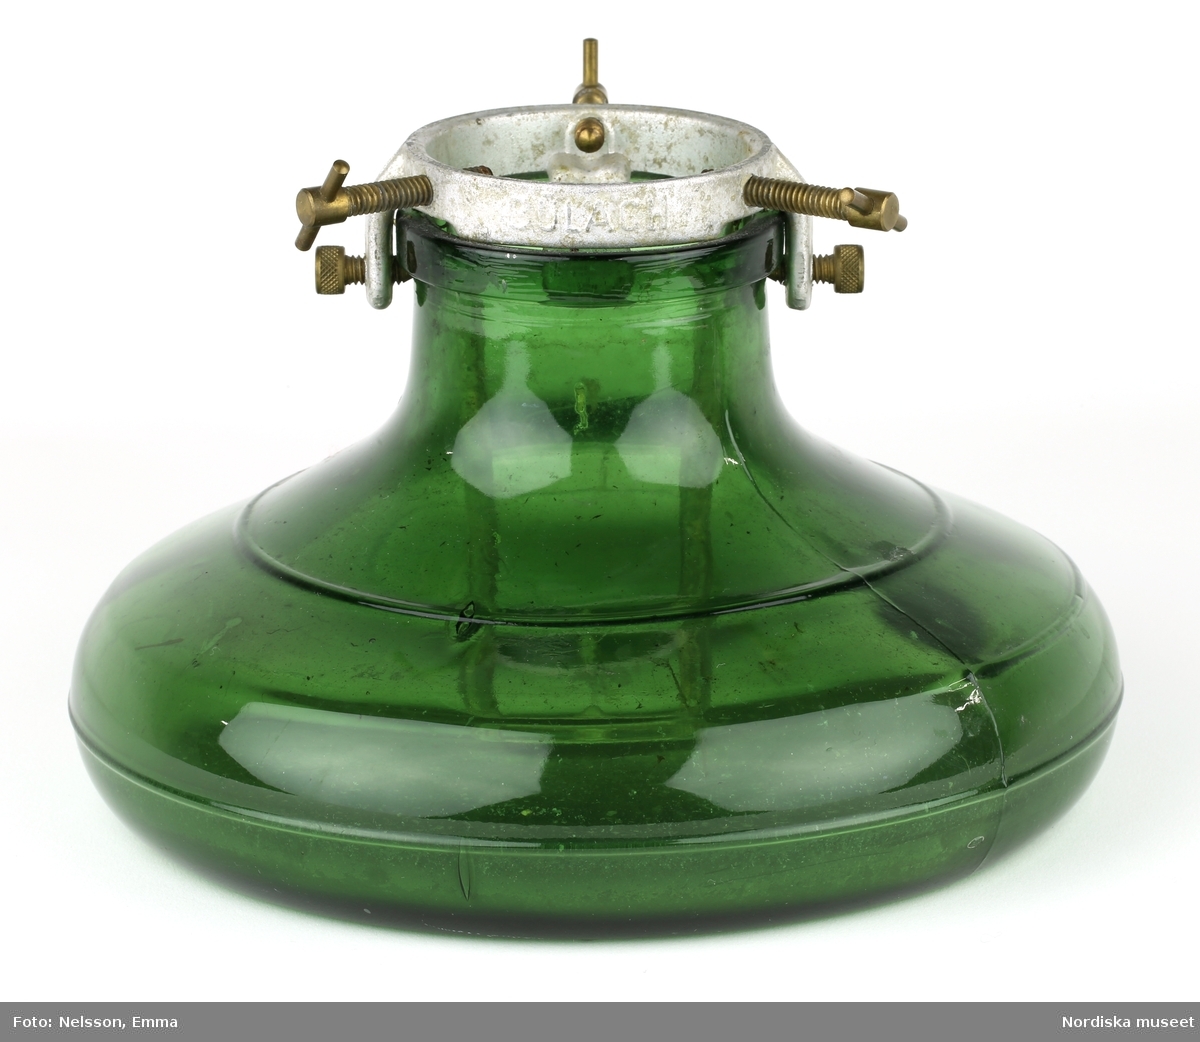 En julgransfot av grönt glas från tidigt 1900-tal, av det schweiziska märket BULACH , mellanstor, 22 cm i diameter. Av modellen "Mignon".

Lena Kättström Höök 2019-03-21